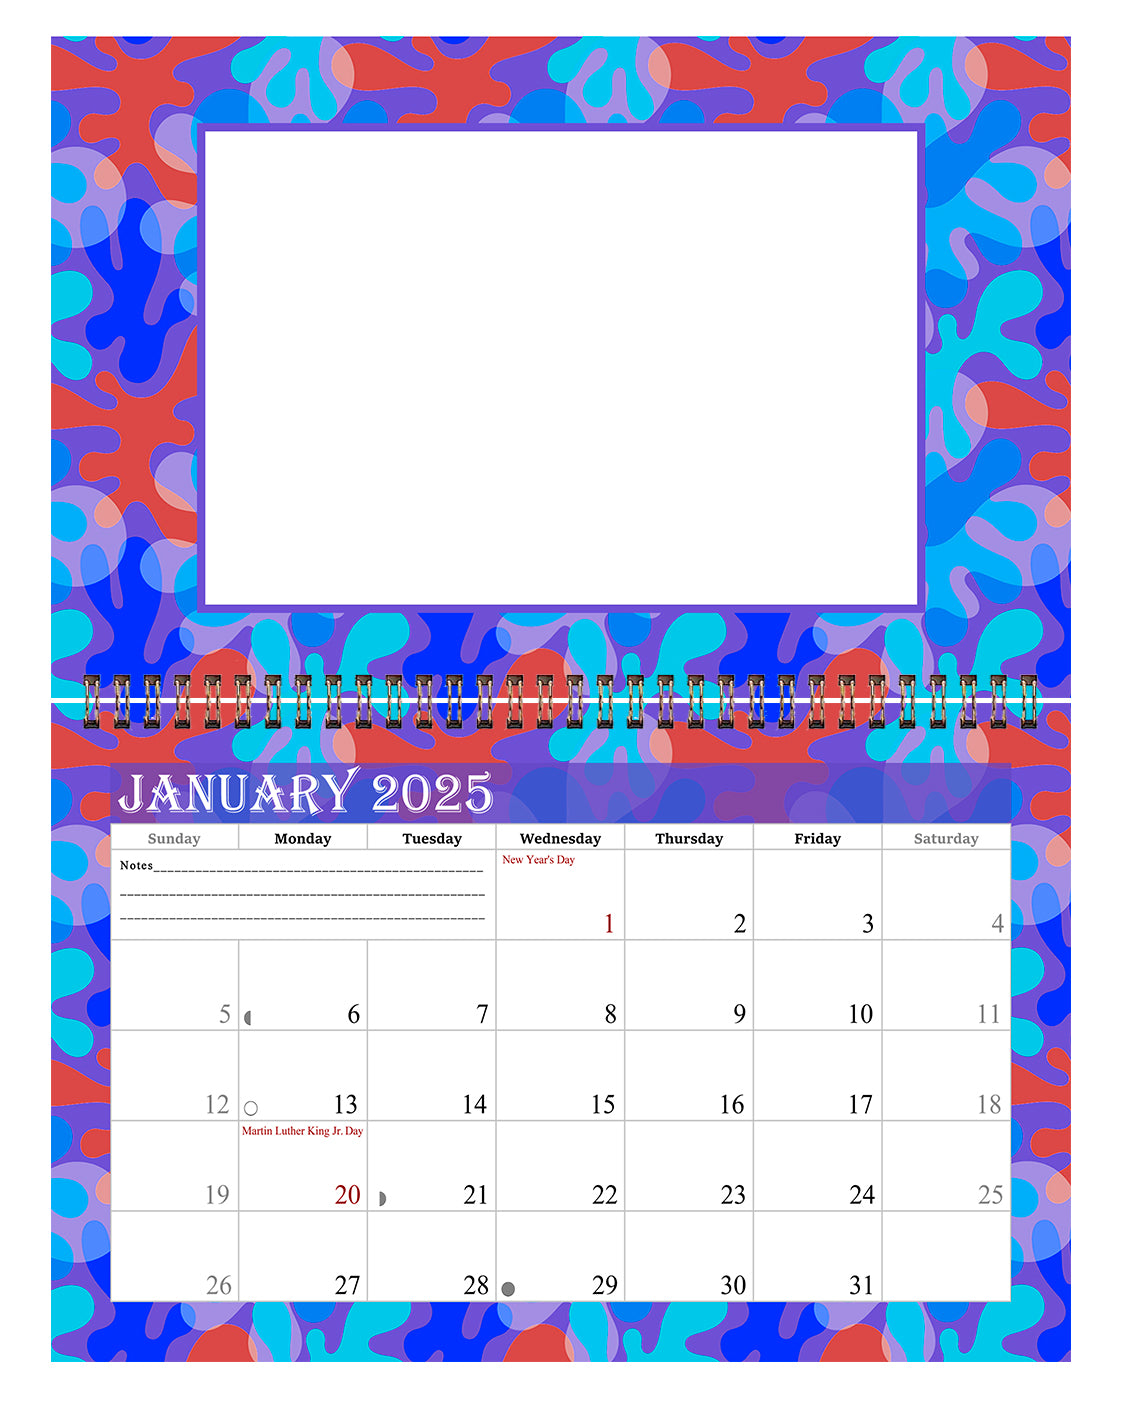 2025 Photo Frame Wall Spiral-bound Calendar (Add Your Own Photos) - 12 Months Desktop/Wall Calendar/Planner - (Edition #03)